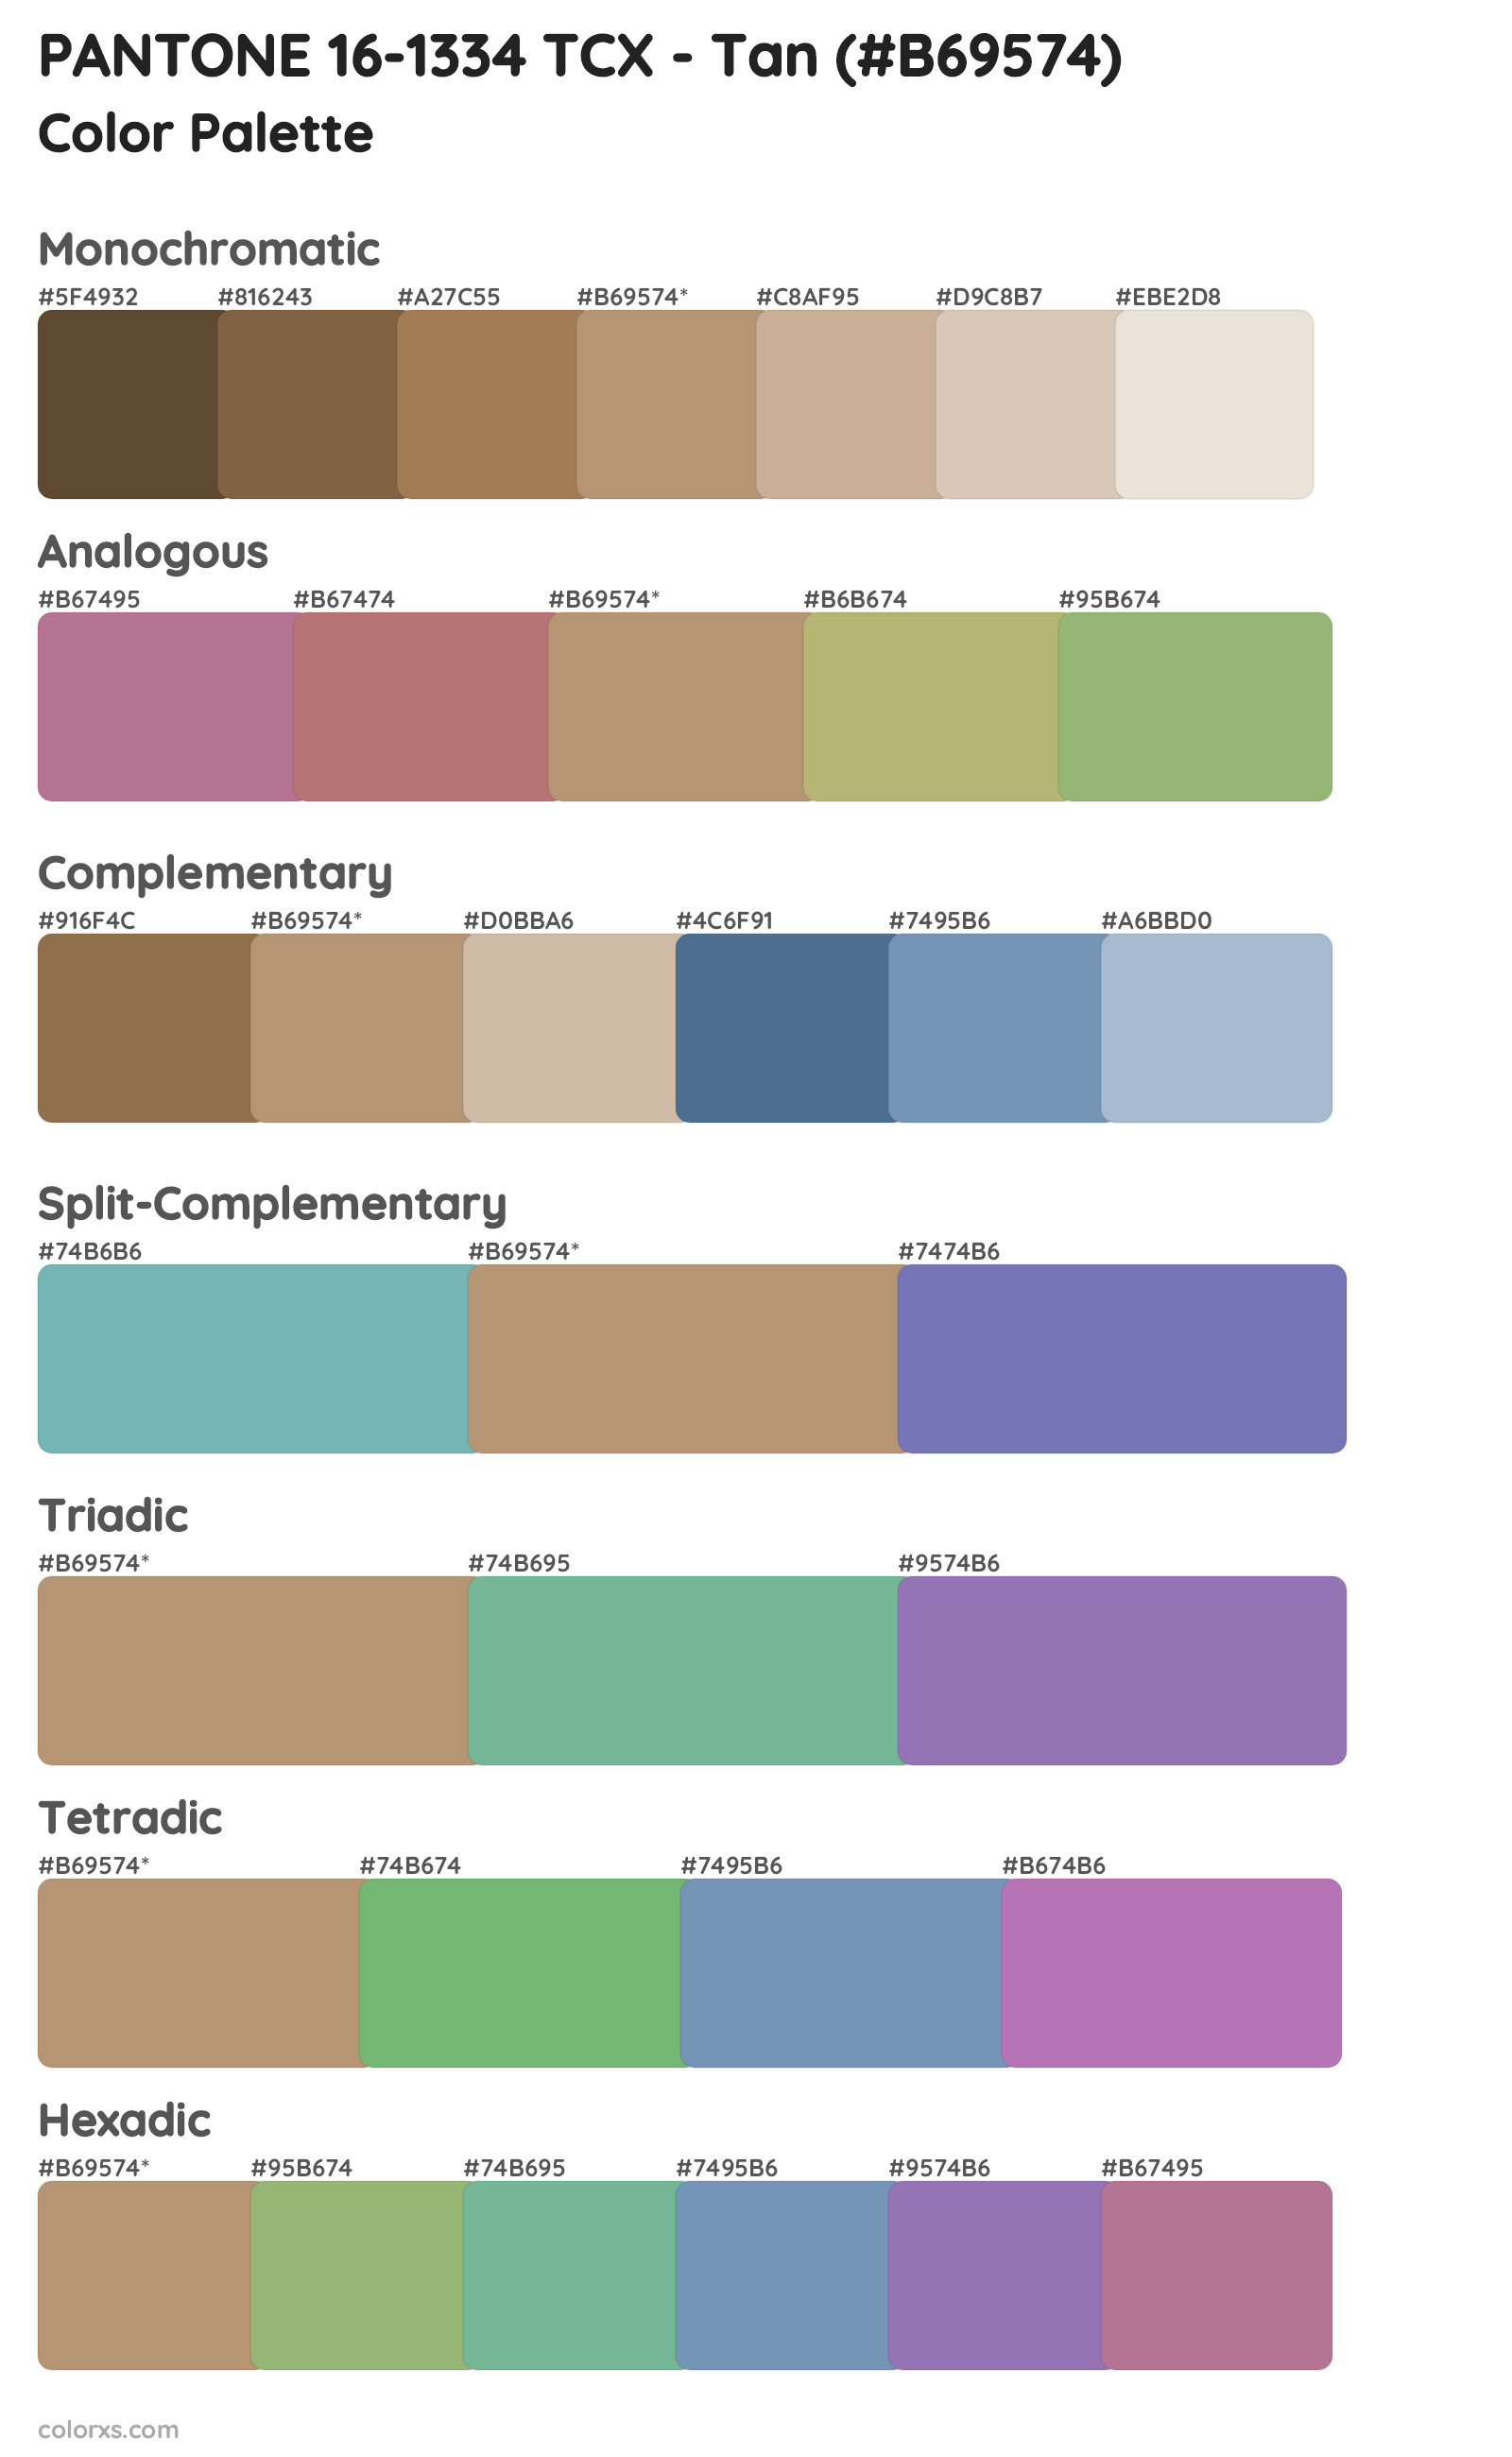 PANTONE 16-1334 TCX - Tan Color Scheme Palettes